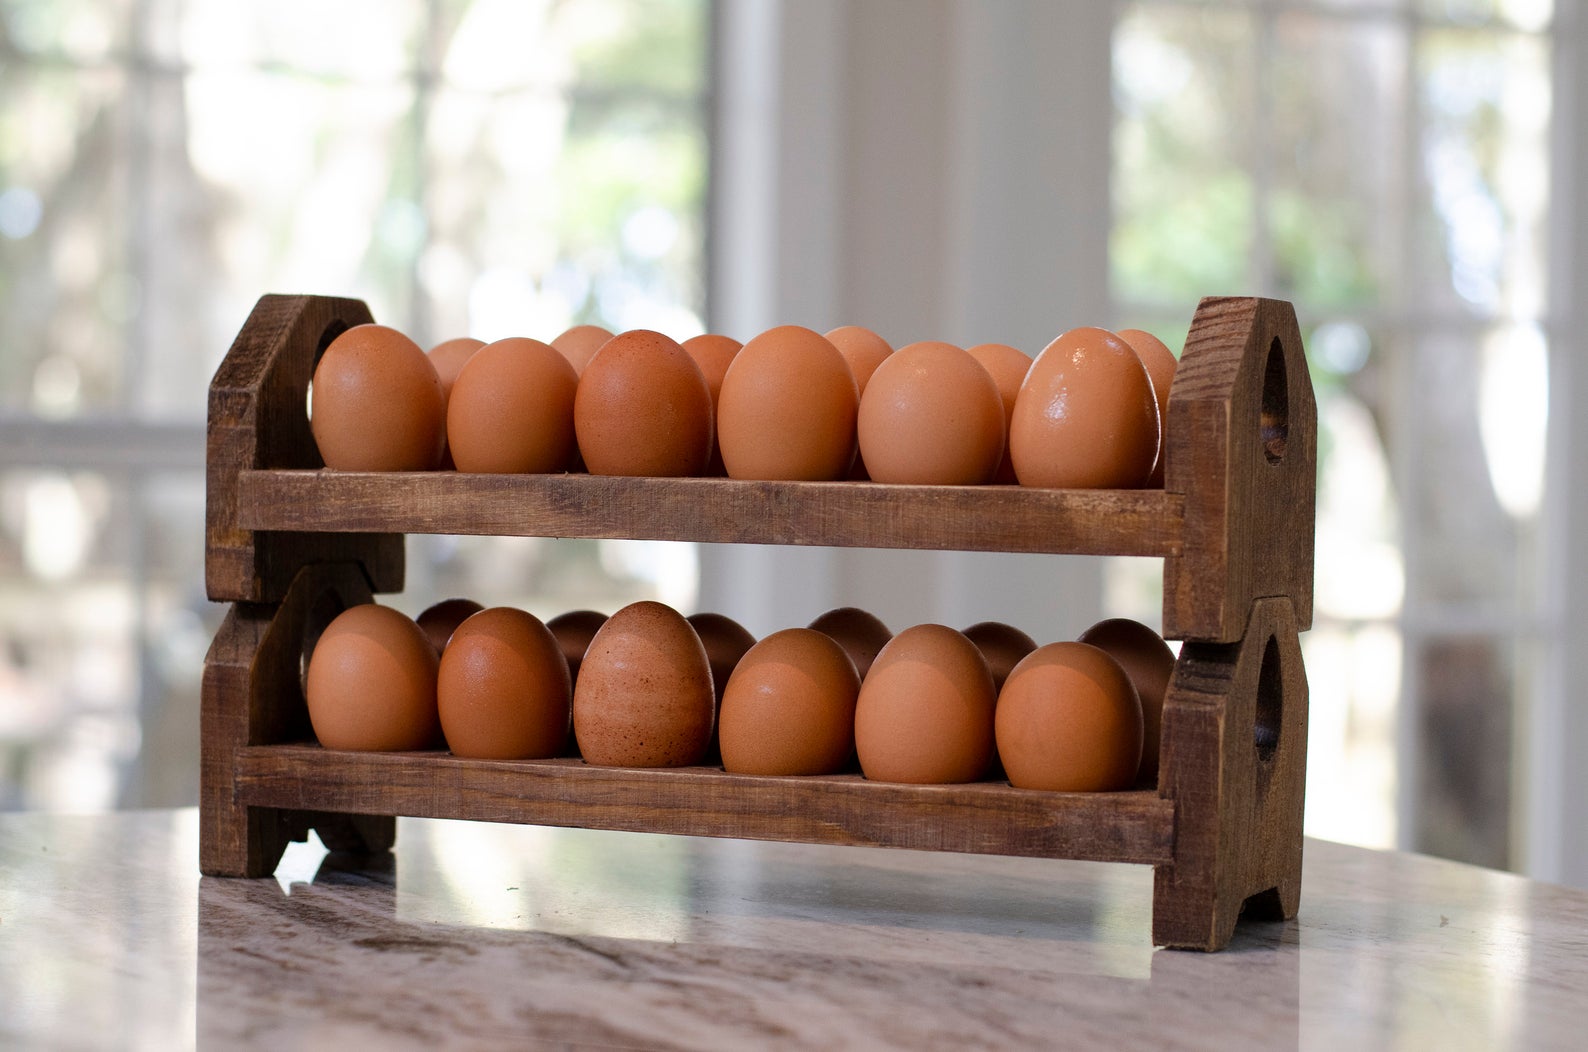 Rustic wooden stackable egg holder